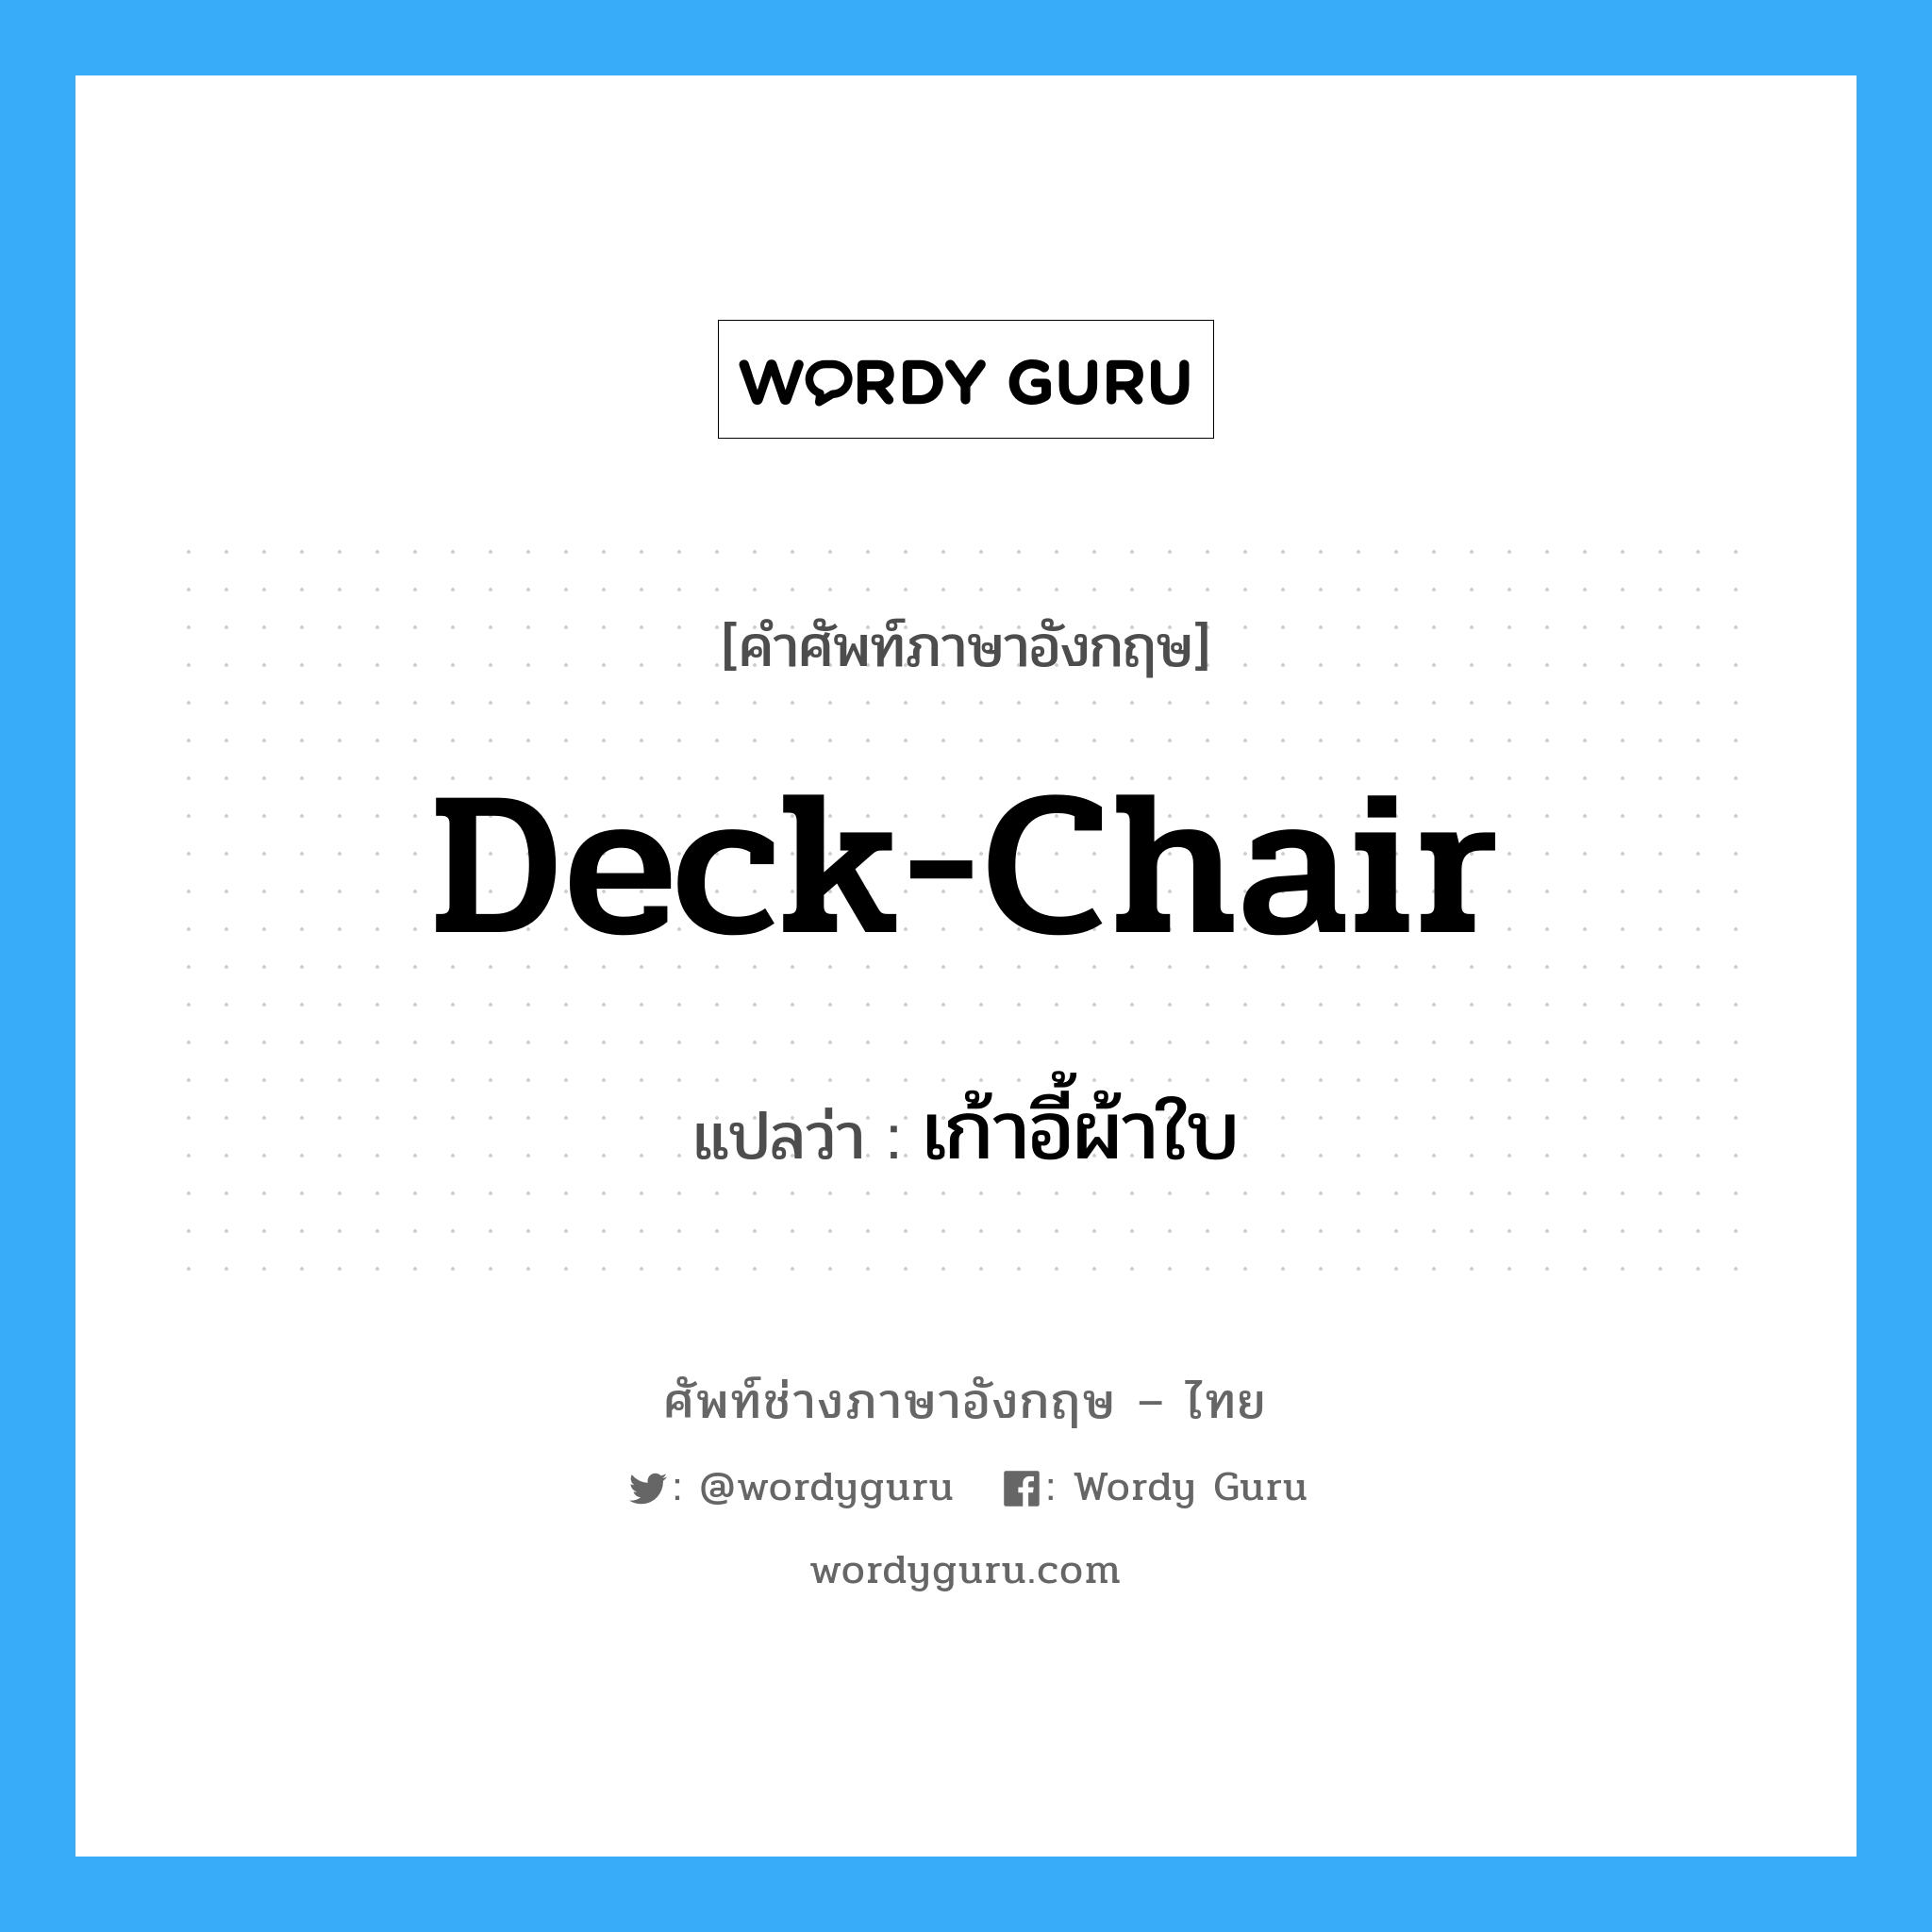 เก้าอี้ผ้าใบ ภาษาอังกฤษ?, คำศัพท์ช่างภาษาอังกฤษ - ไทย เก้าอี้ผ้าใบ คำศัพท์ภาษาอังกฤษ เก้าอี้ผ้าใบ แปลว่า deck-chair